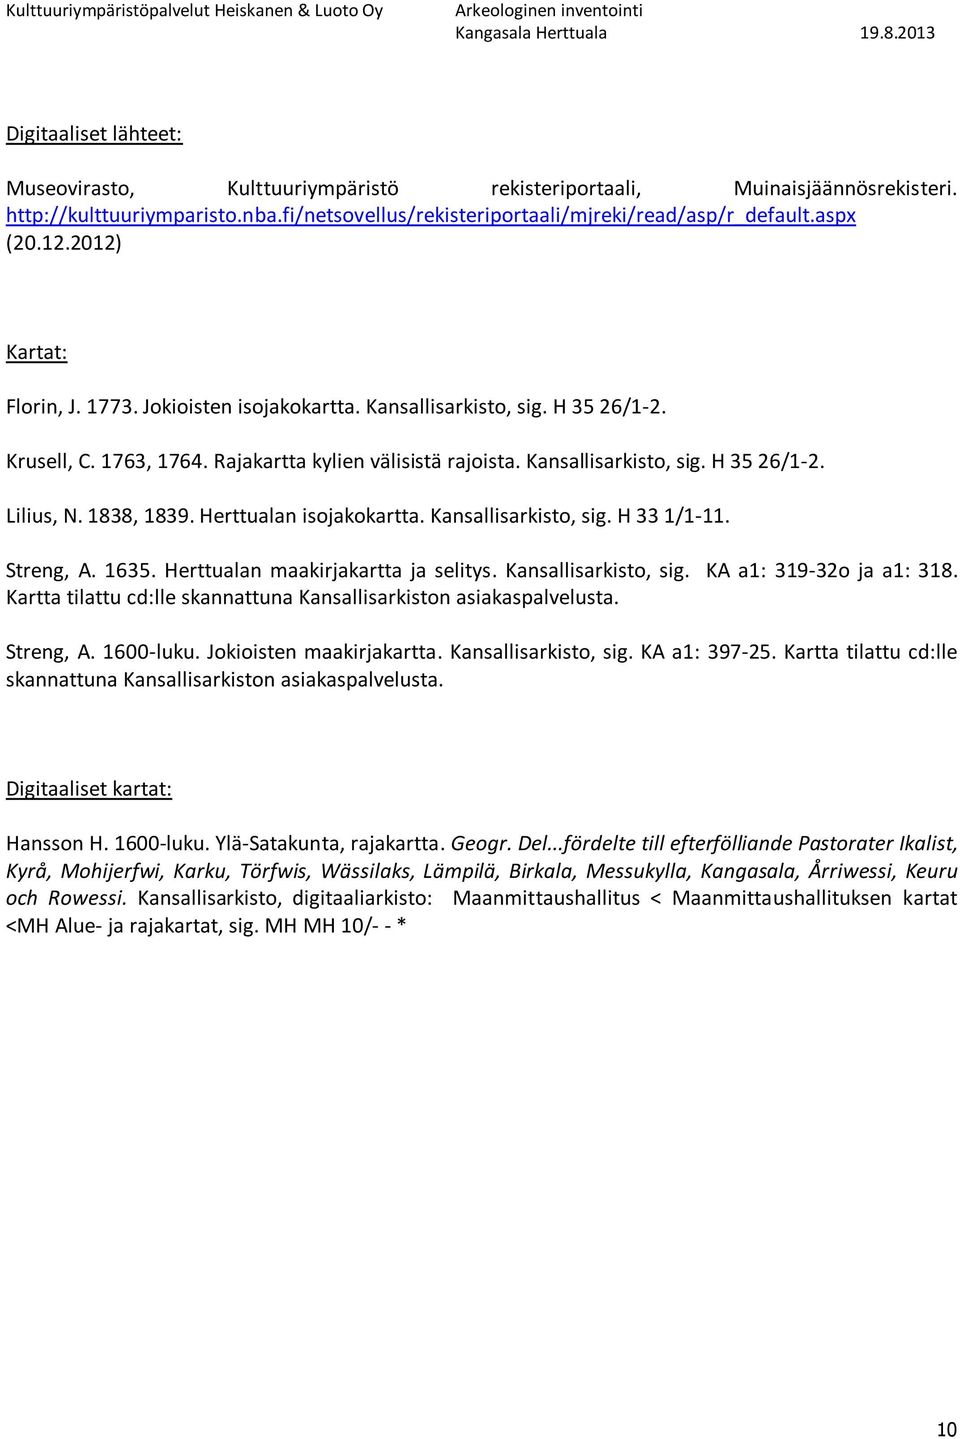 Rajakartta kylien välisistä rajoista. Kansallisarkisto, sig. H 35 26/1-2. Lilius, N. 1838, 1839. n isojakokartta. Kansallisarkisto, sig. H 33 1/1-11. Streng, A. 1635. n maakirjakartta ja selitys.